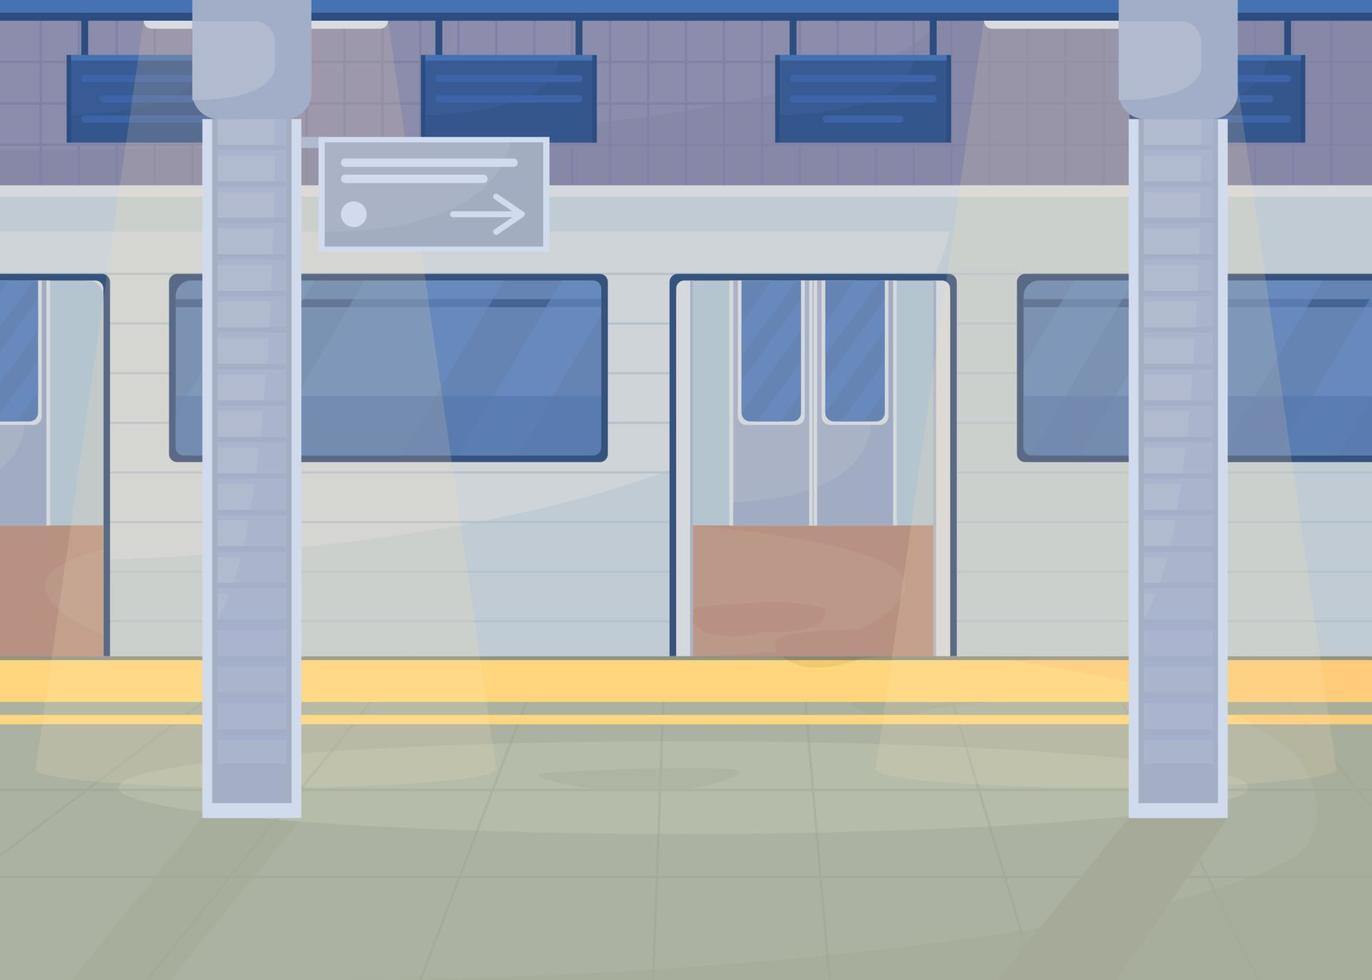 station de métro illustration vectorielle de couleur plate vecteur